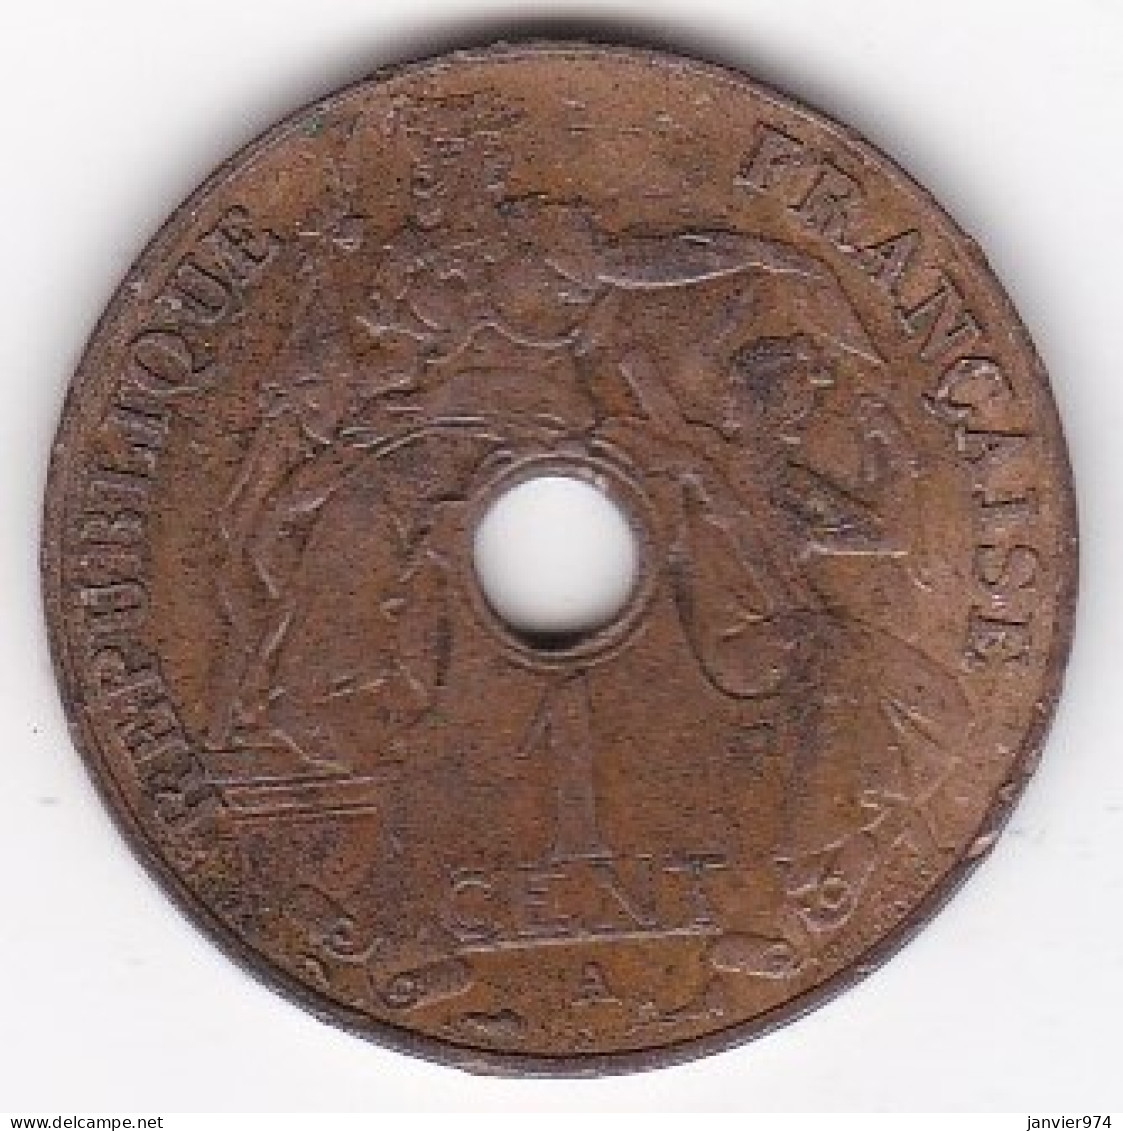 Indochine Française. 1 Cent 1912 A. En Bronze, SUPERBE , Lec# 73 - Indochine